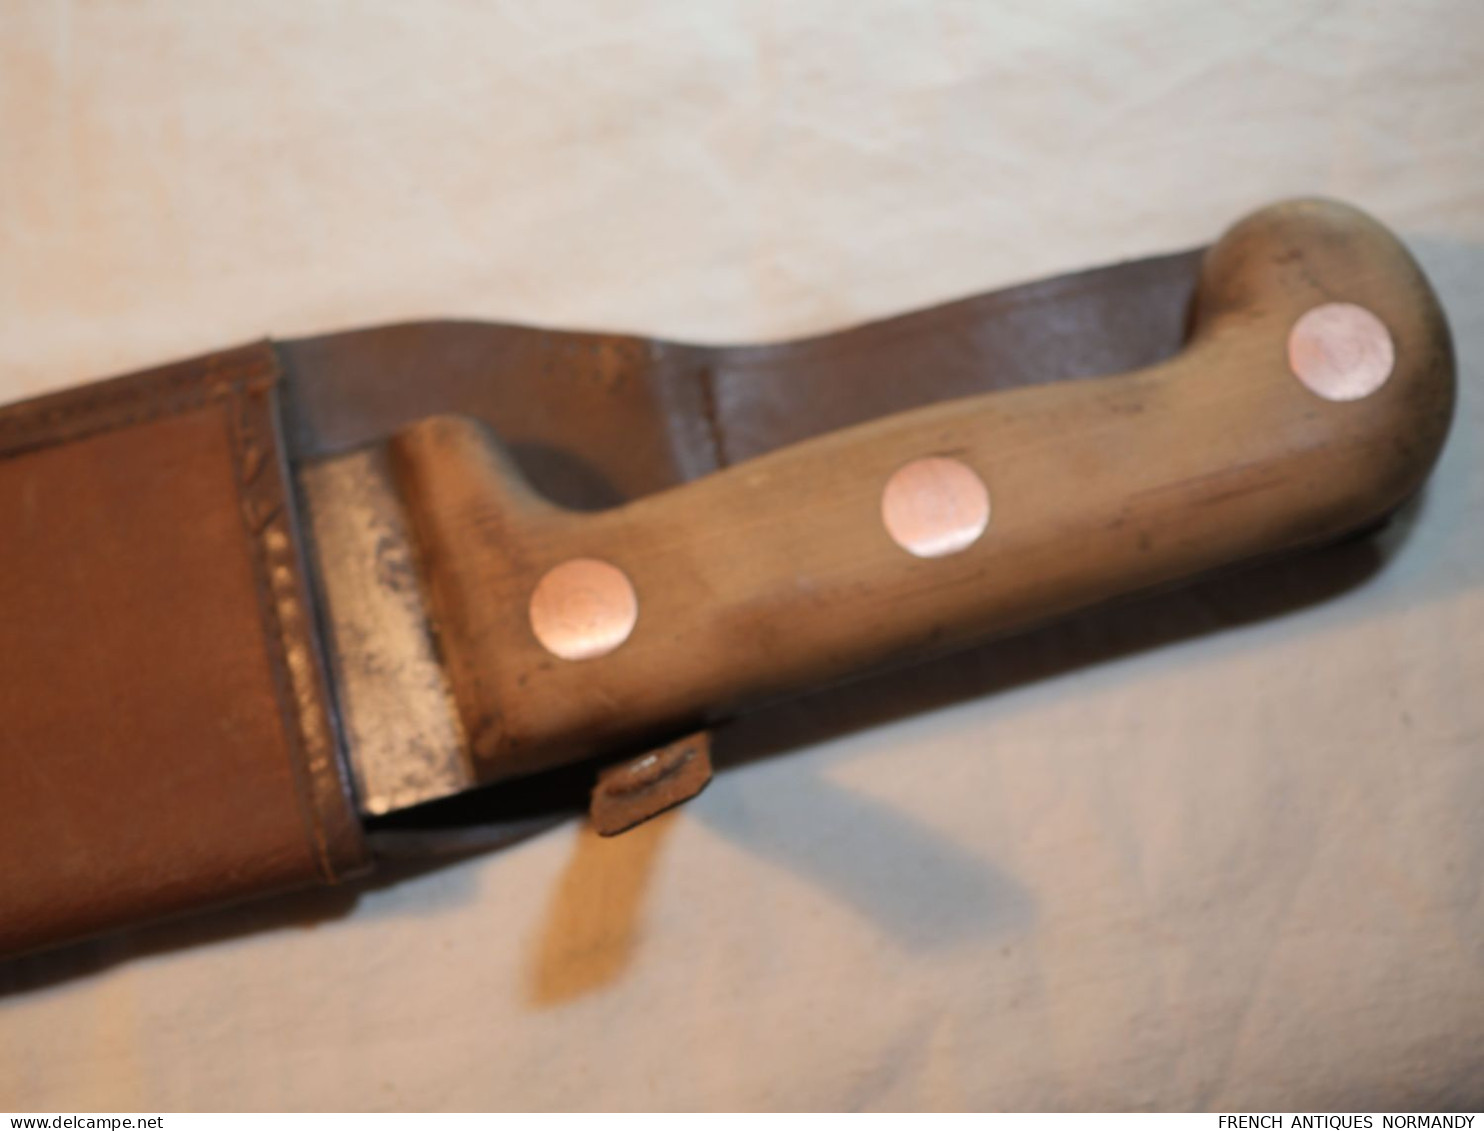 Couteau machette avec étui sans doute militaire - époque après guerre ou WWII   Longueur lame 39 cm